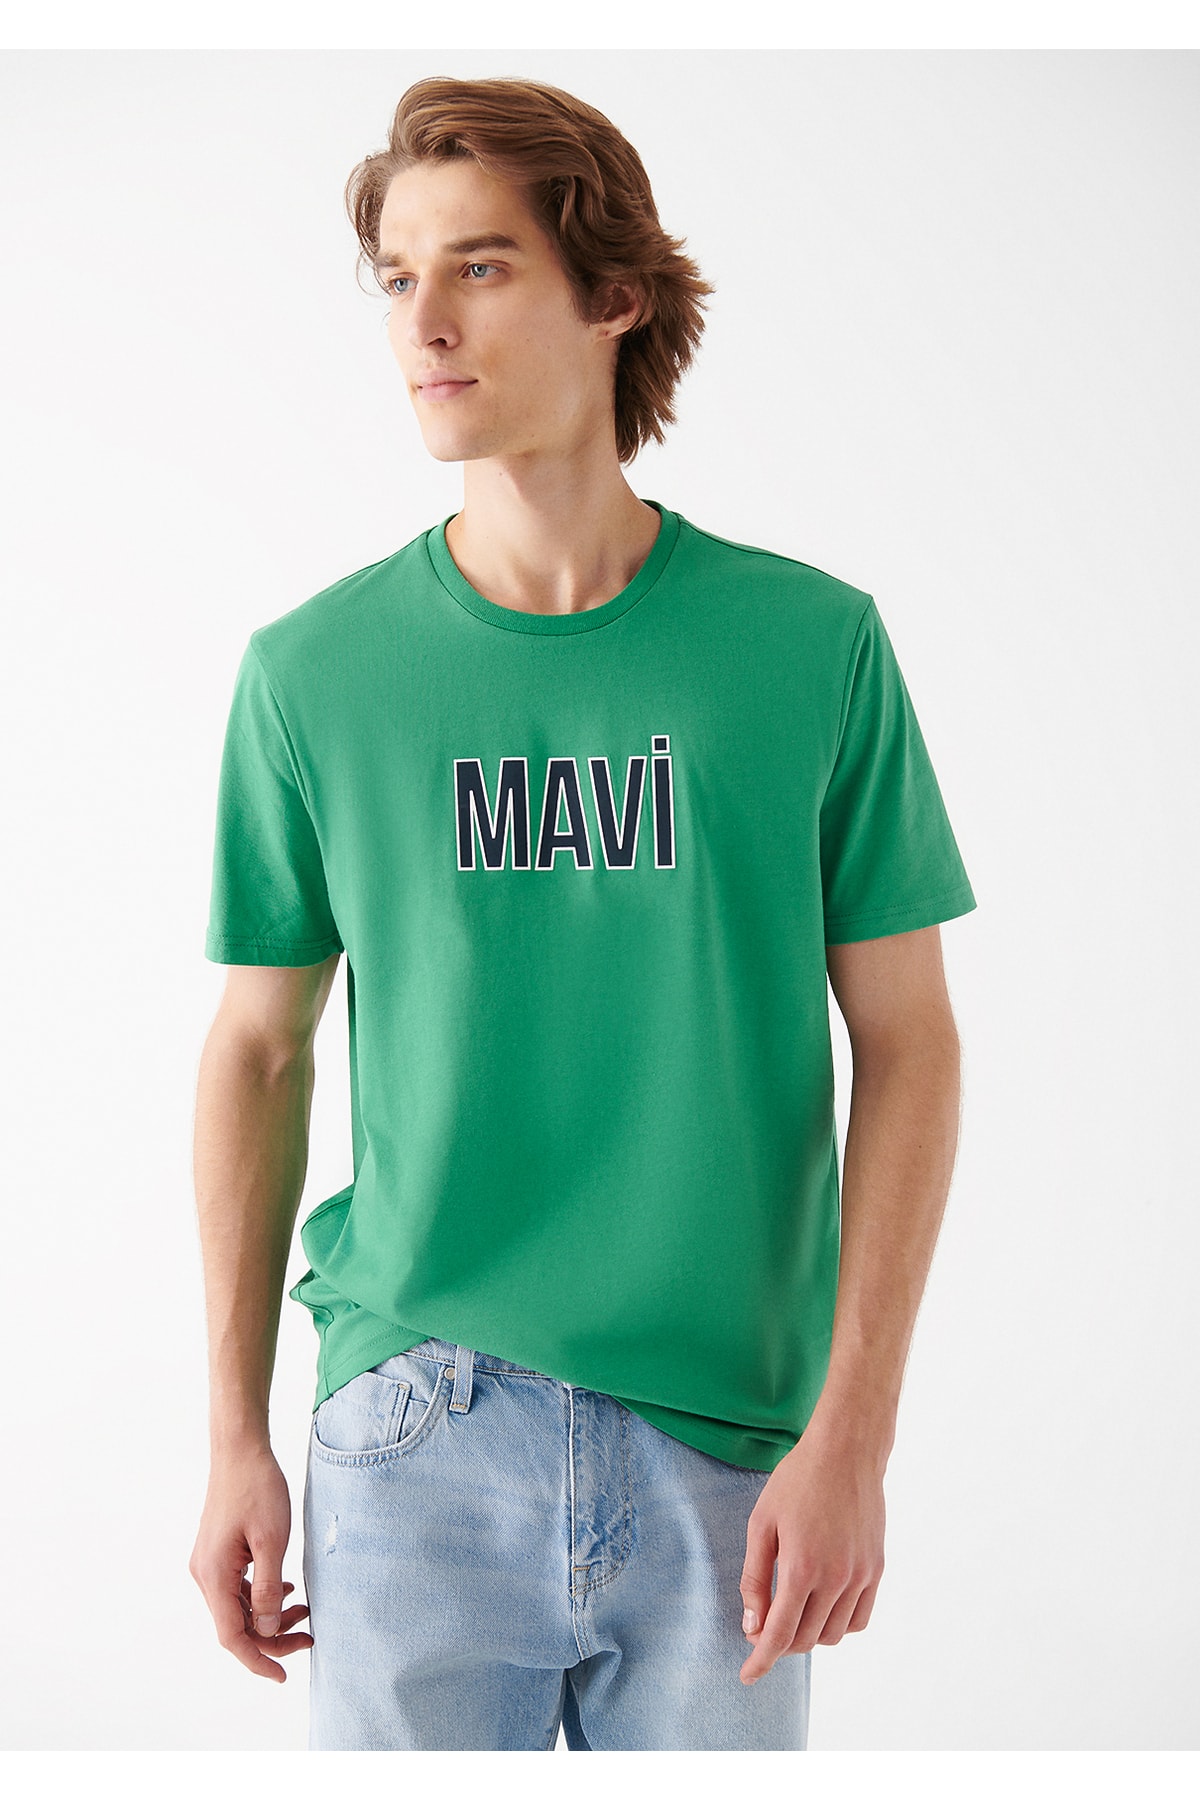 تیشرت ساده سبز مردانه ماوی Mavi